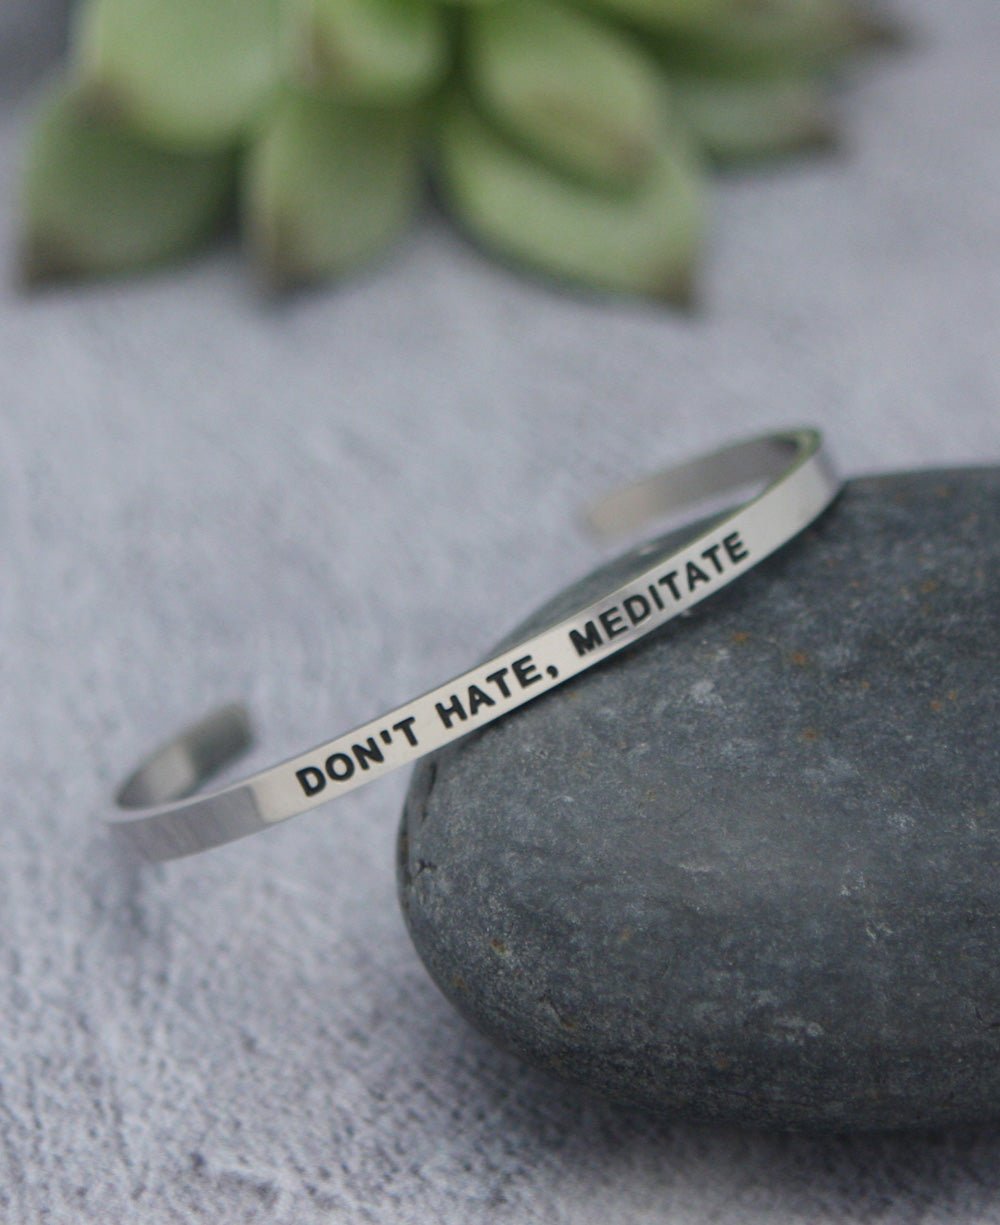 Don’t Hate, Meditate Motivational Cuff Bracelet - Bracelets